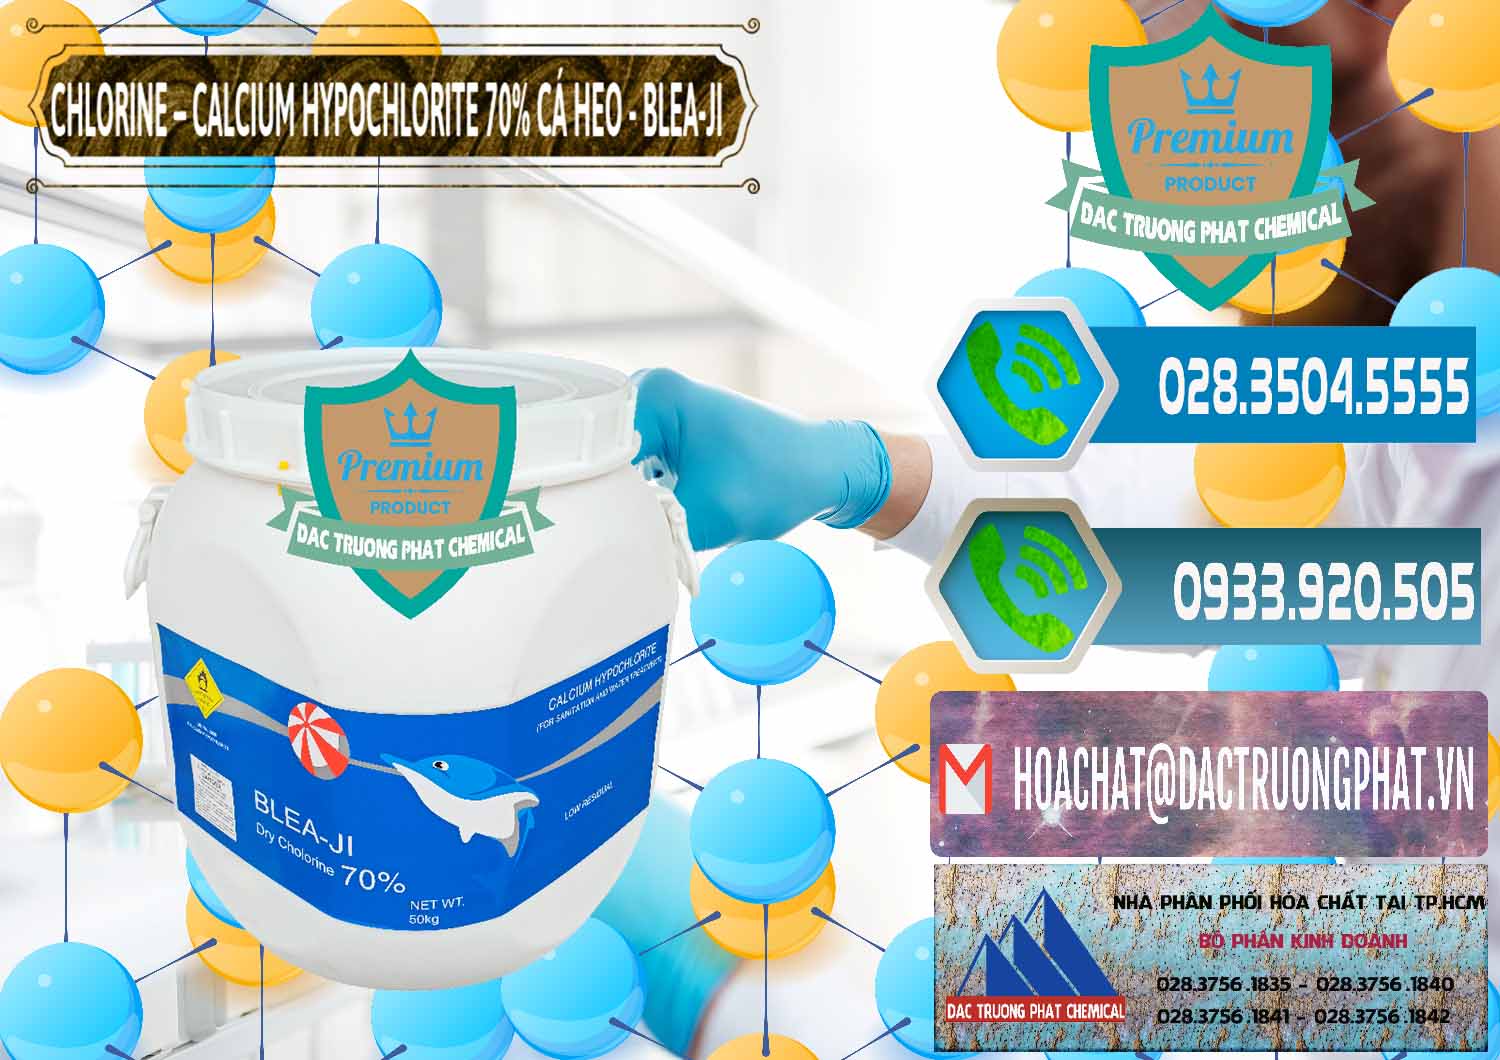 Đơn vị chuyên cung cấp và bán Clorin - Chlorine Cá Heo 70% Blea-Ji Trung Quốc China - 0056 - Phân phối hóa chất tại TP.HCM - congtyhoachat.net